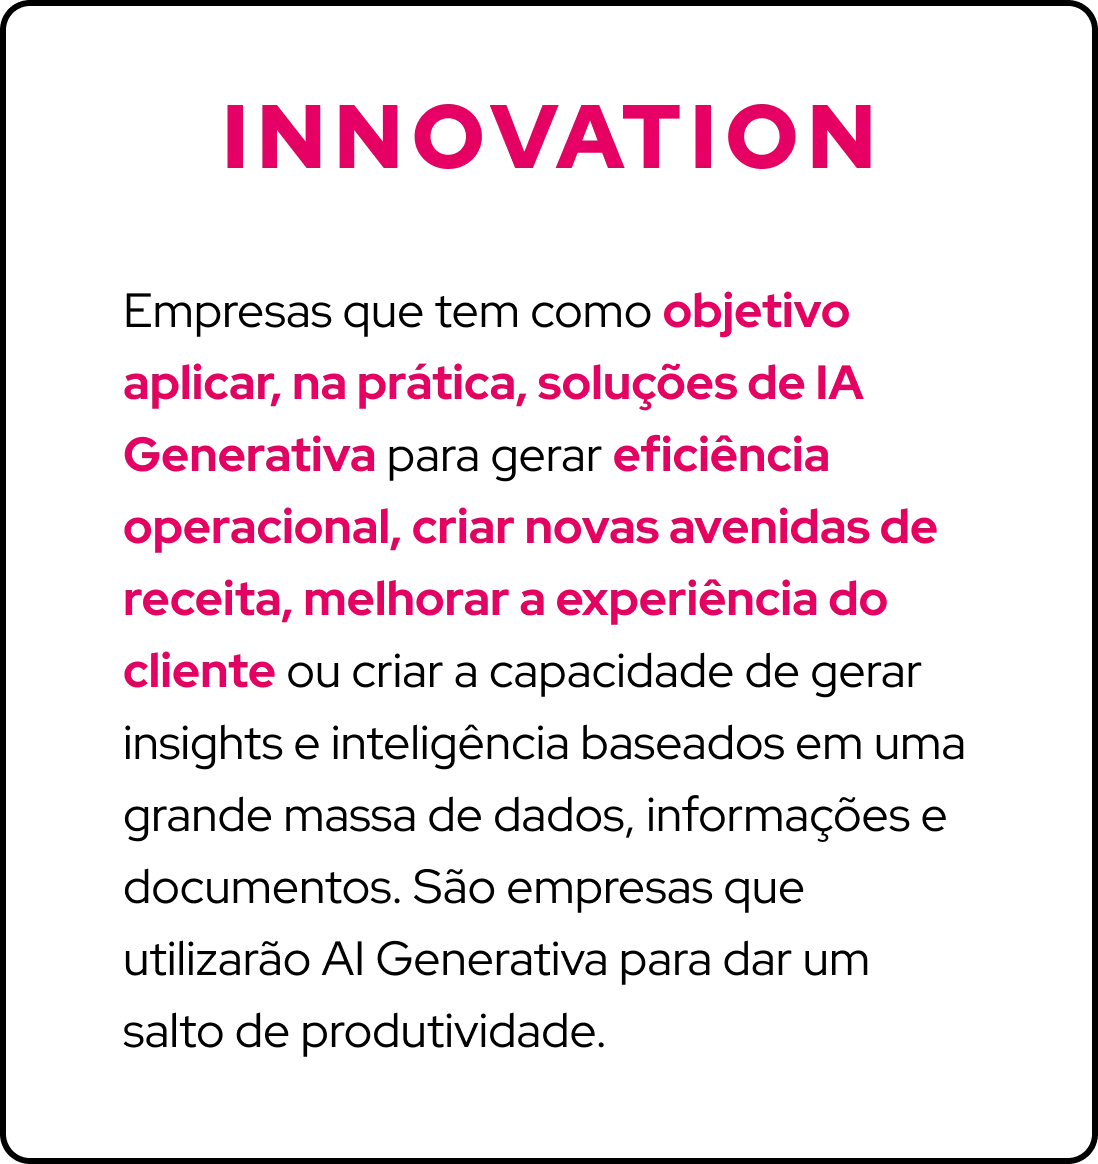 innovation